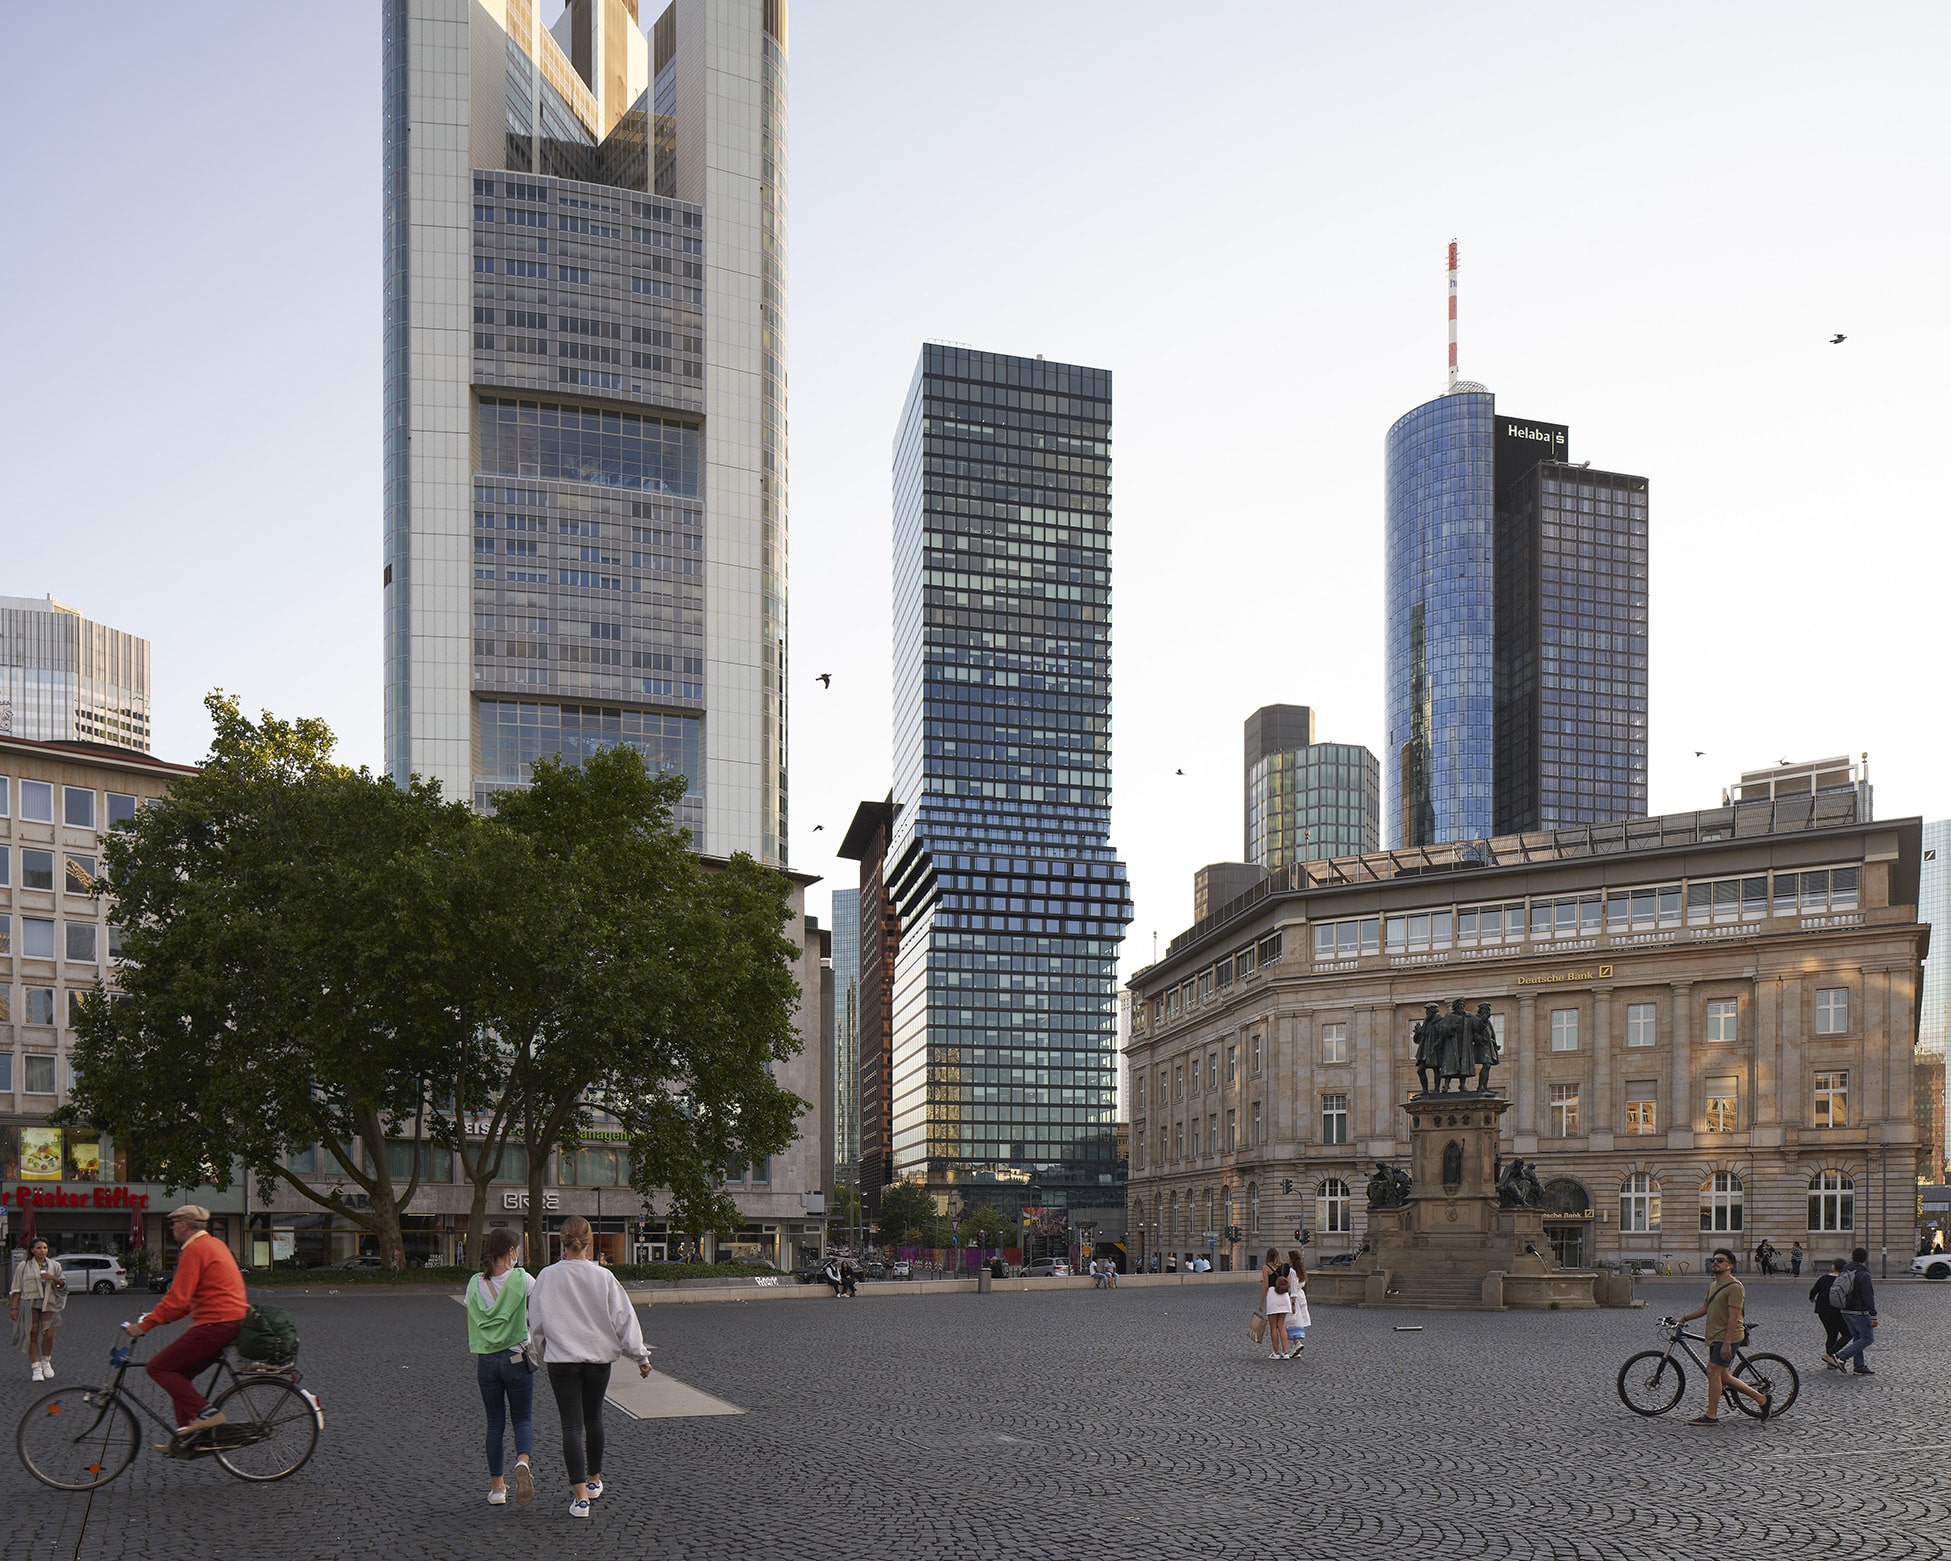 Der 185 Meter hohe Omniturm Frankfurt, entworfen von Bjarke Ingels Group, ist das erste Hybridhochhaus Deutschlands – mit Hüftschwung. Foto: Nils Koenning & BIG – Bjarke Ingels Group